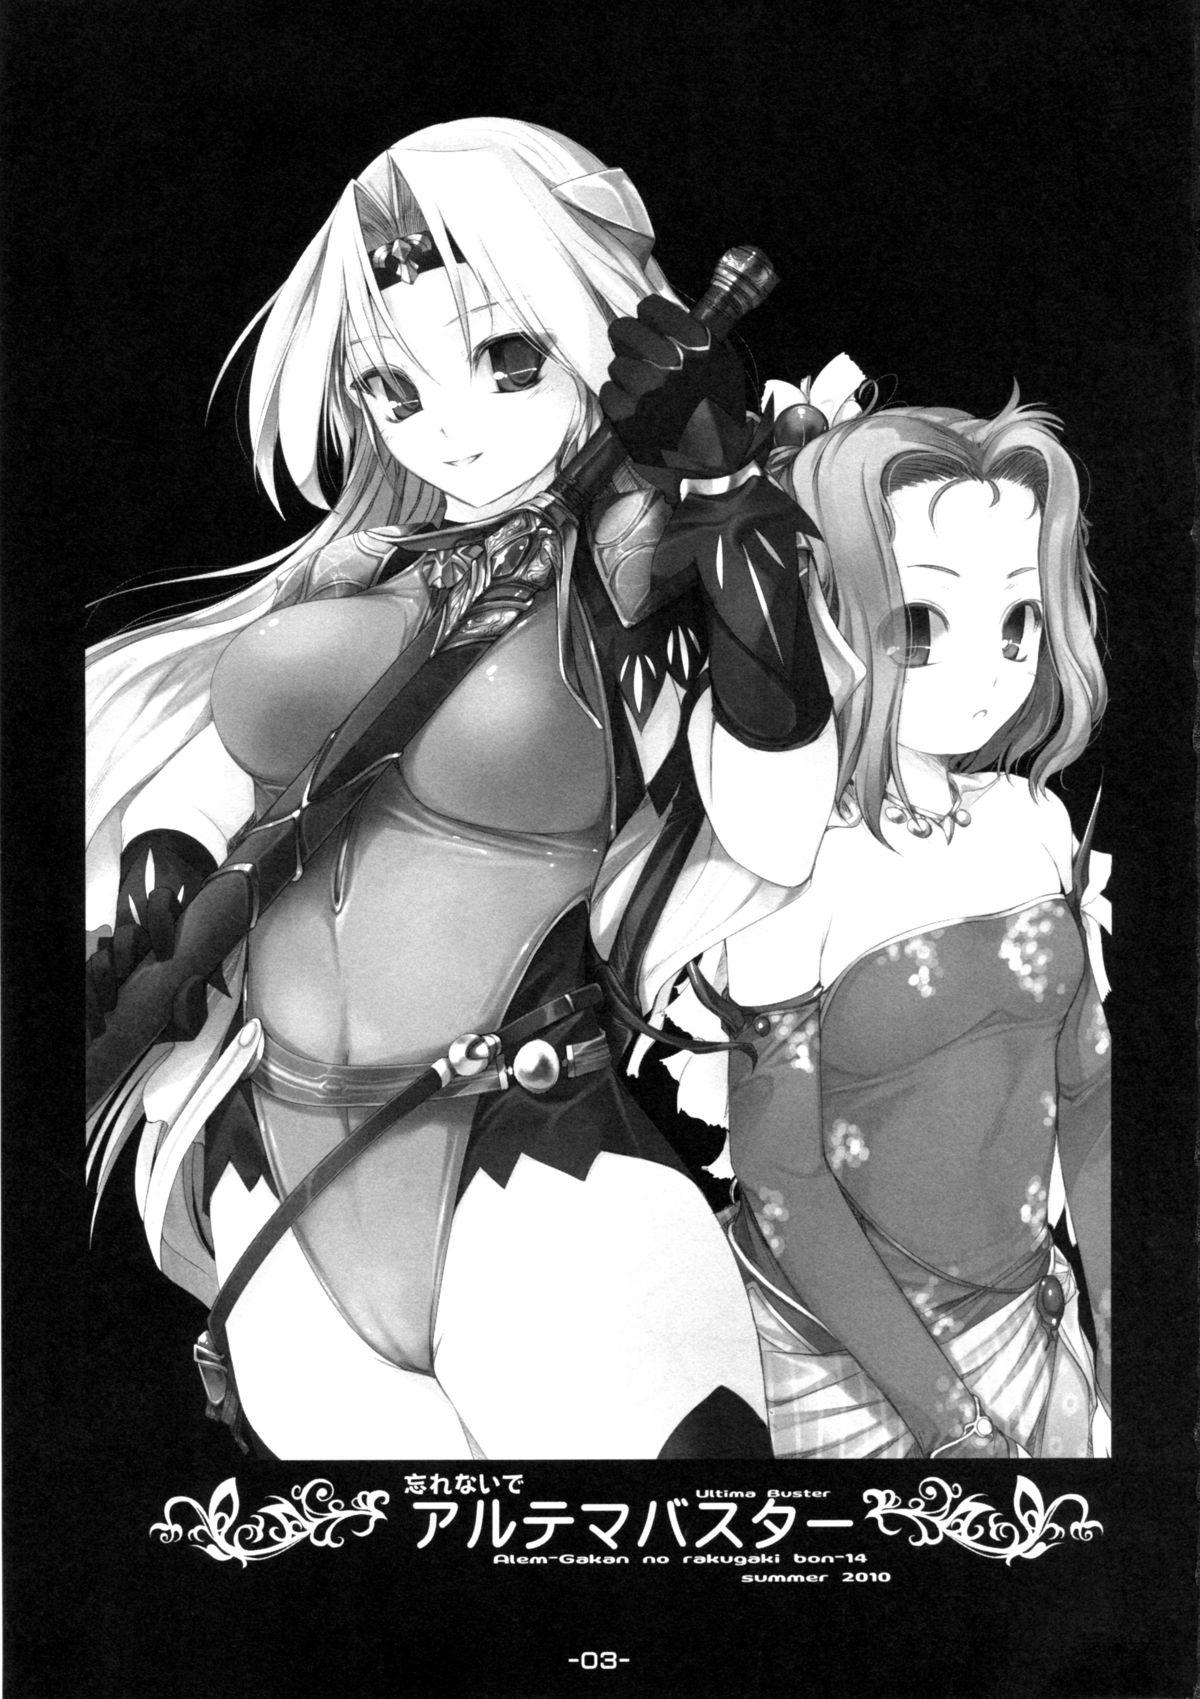 Camgirls Wasurenai de Ultima Buster - Seiken densetsu 3 Final fantasy vi Puta - Page 3